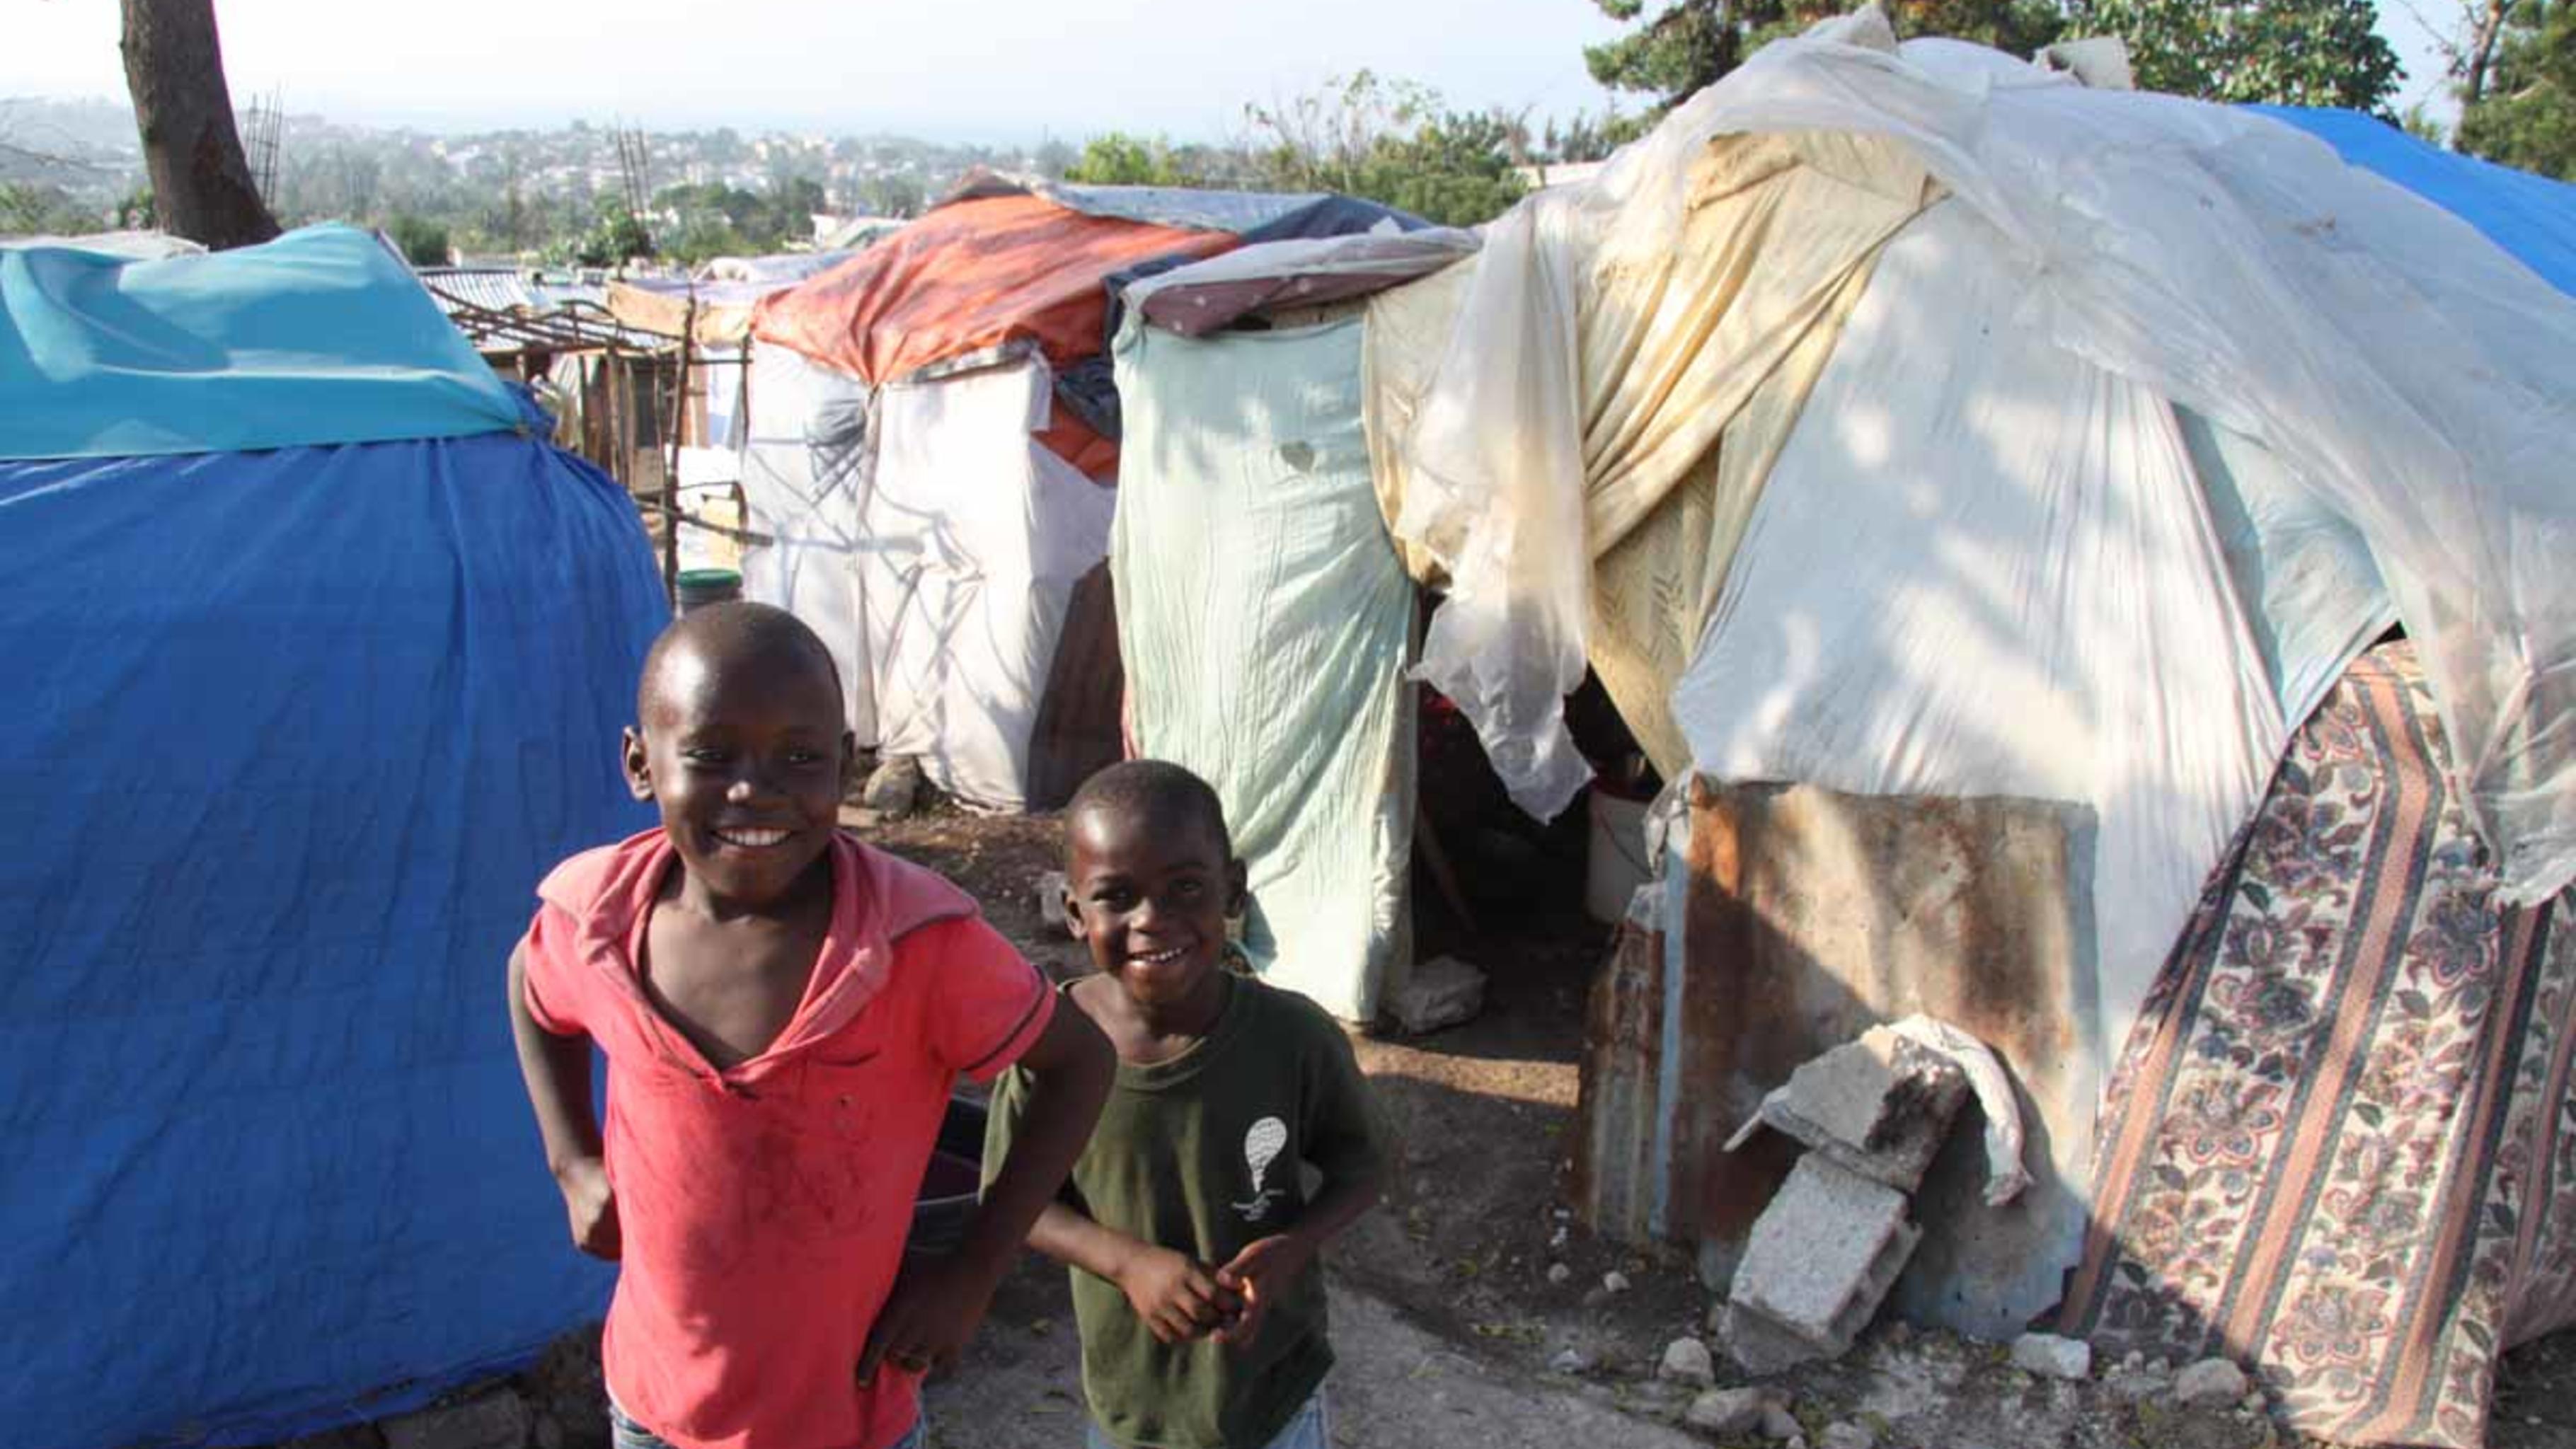 Foto: Jungen in einem kleinen Notcamp in Delmas, Port-au-Prince